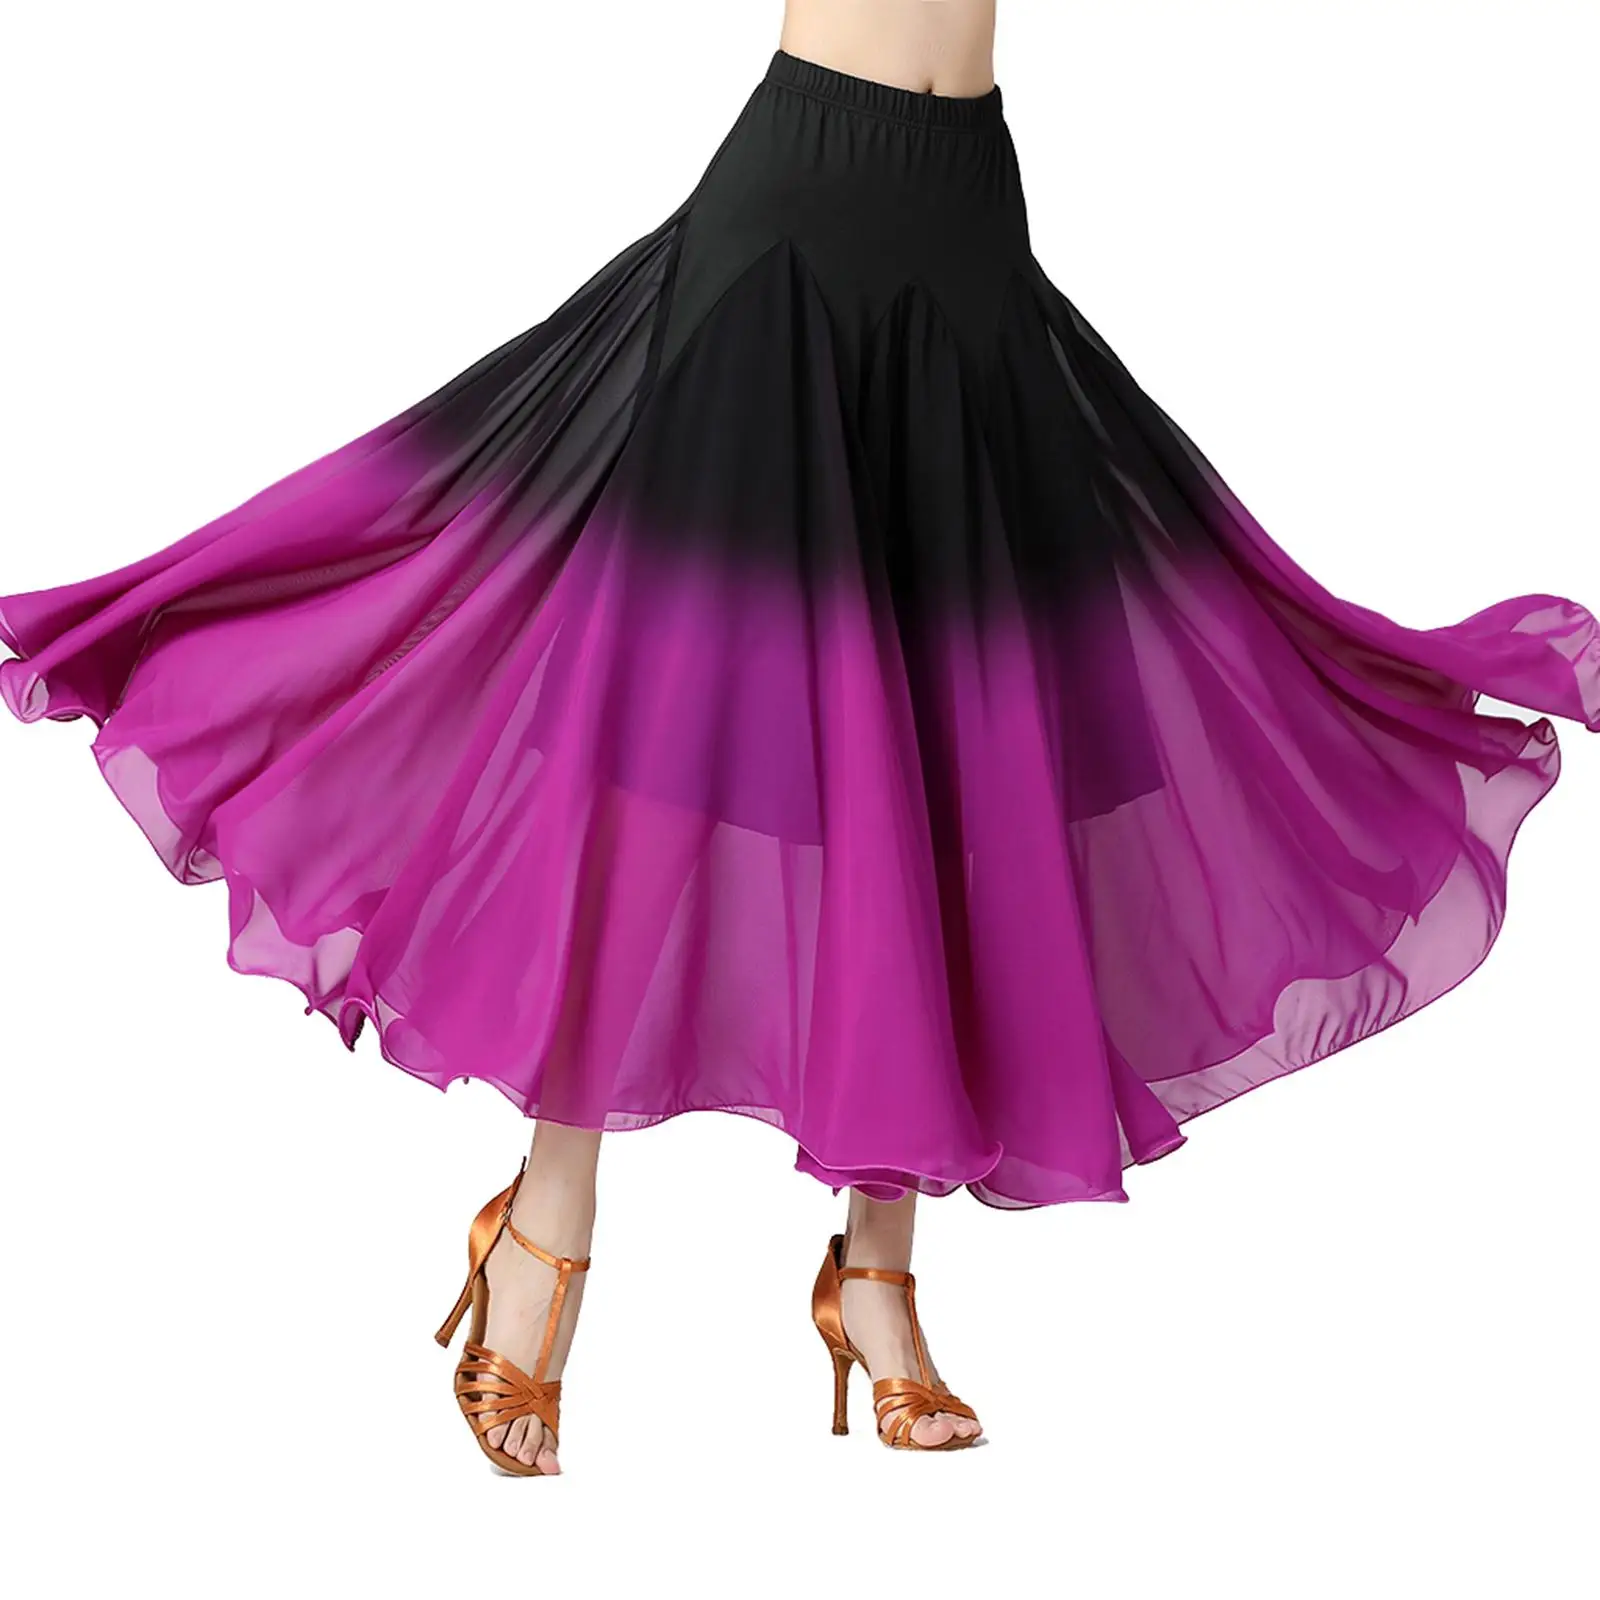 Womens Ballroom Dance Skirt Long Swing Skirt Dance Practice Party Dress Performance Costume Latin Elegant Belly Dancing Dress